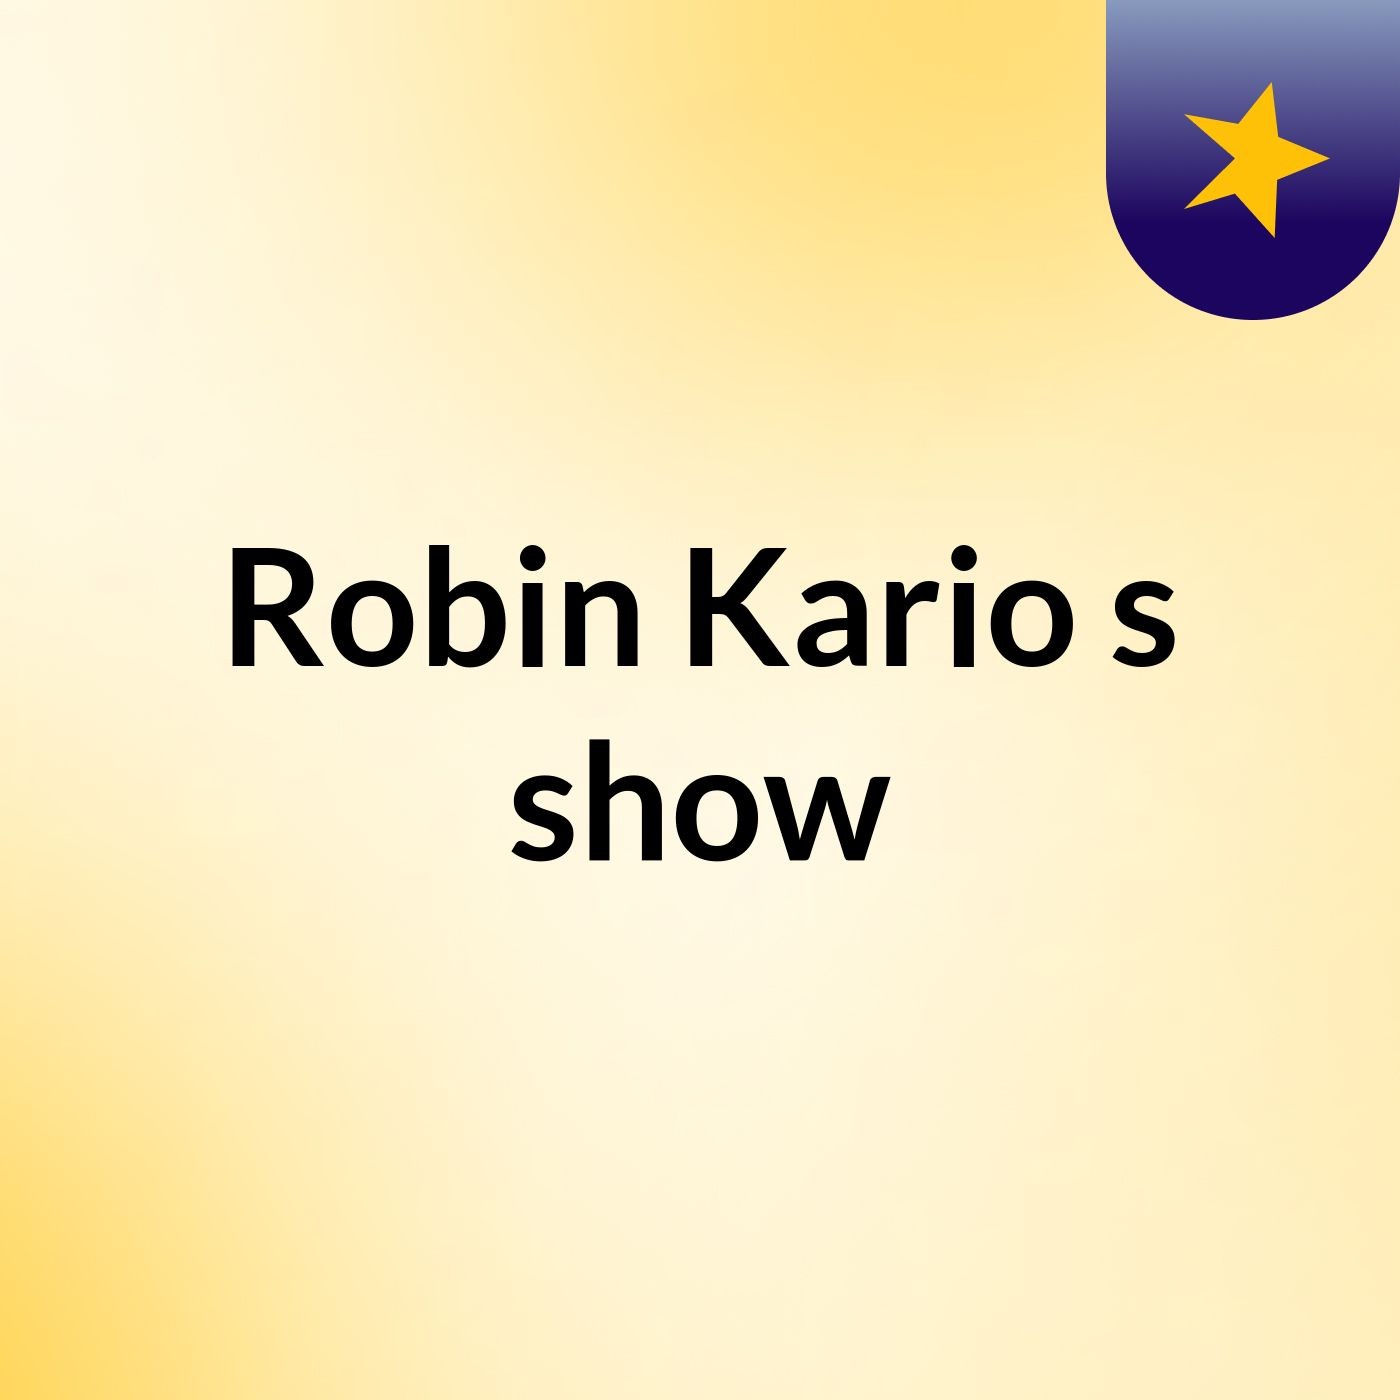 Episode 4 - Robin Kario's show